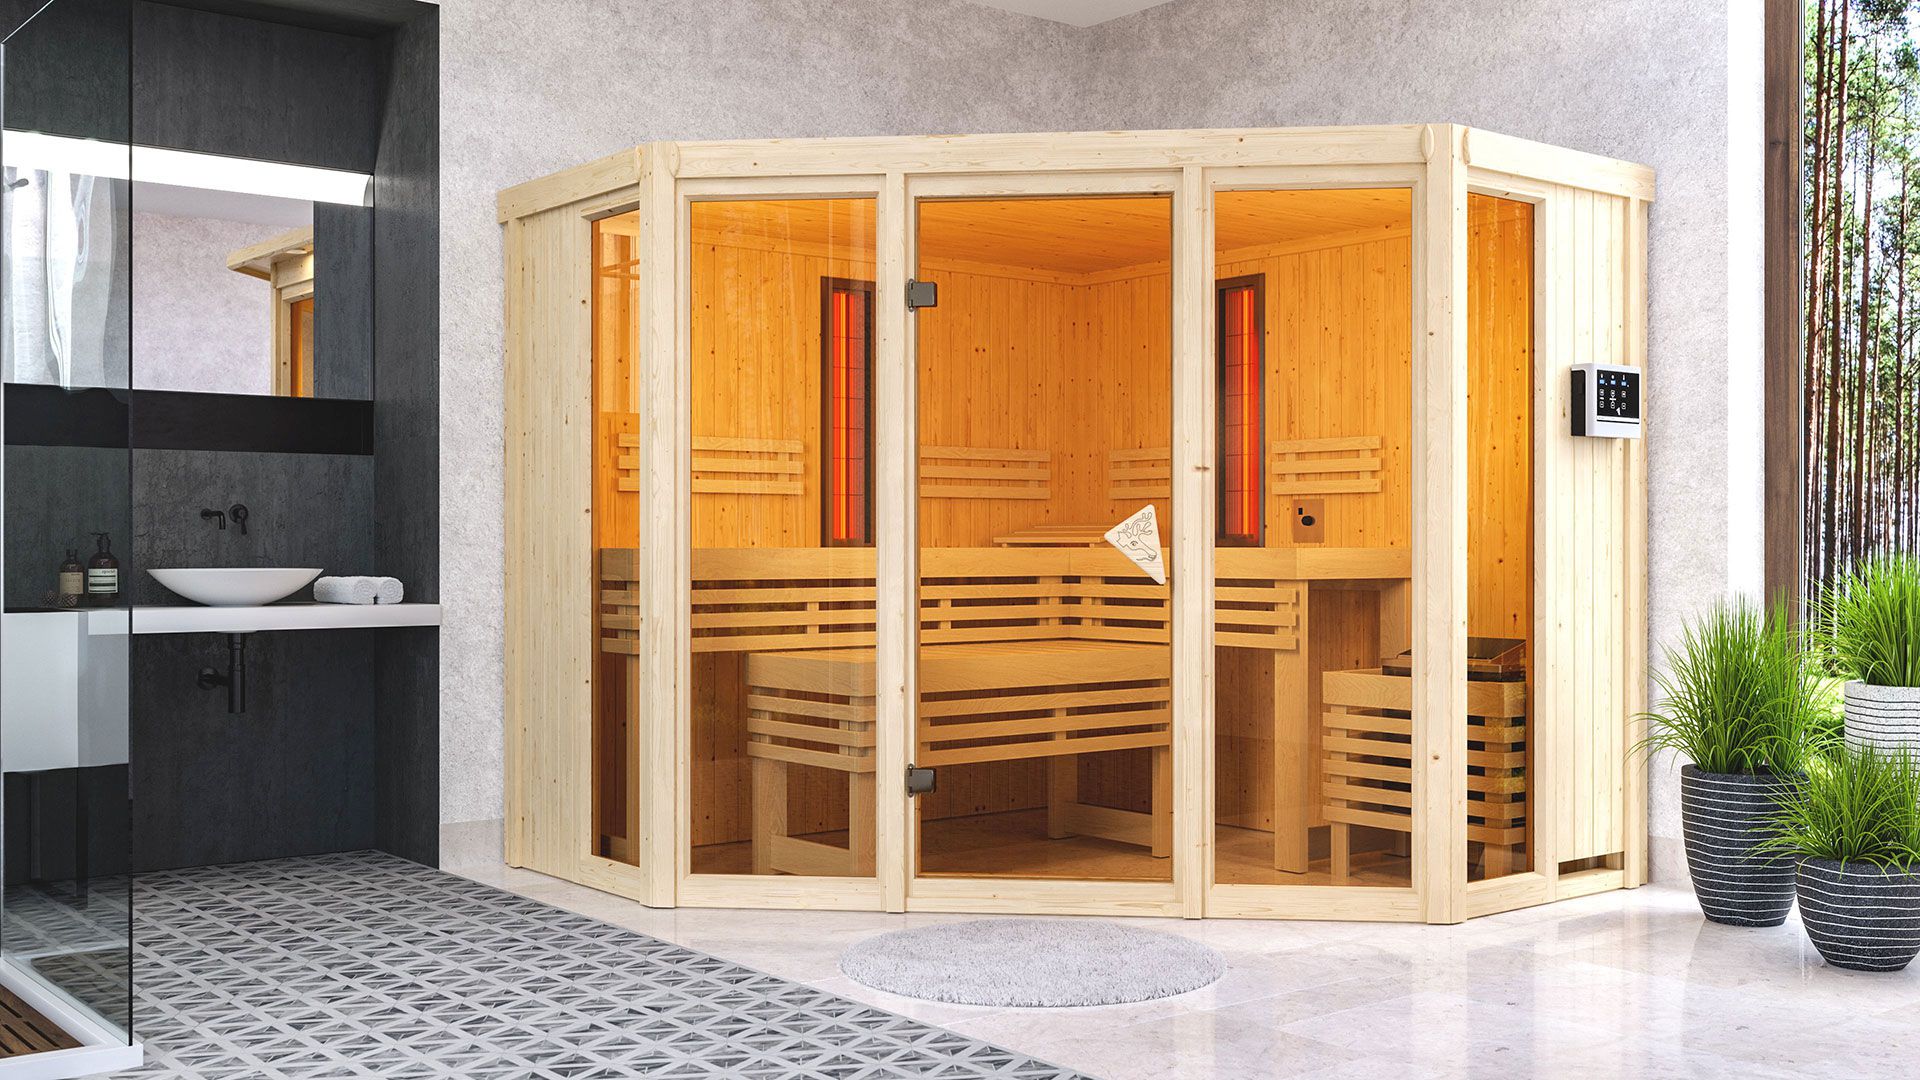 Infrarotkabine "Alvara" SET mit bronzierter Tür - Farbe: Natur, Ofen externe Steuerung easy 9 kW - 231 x 231 x 198 cm (B x T x H)